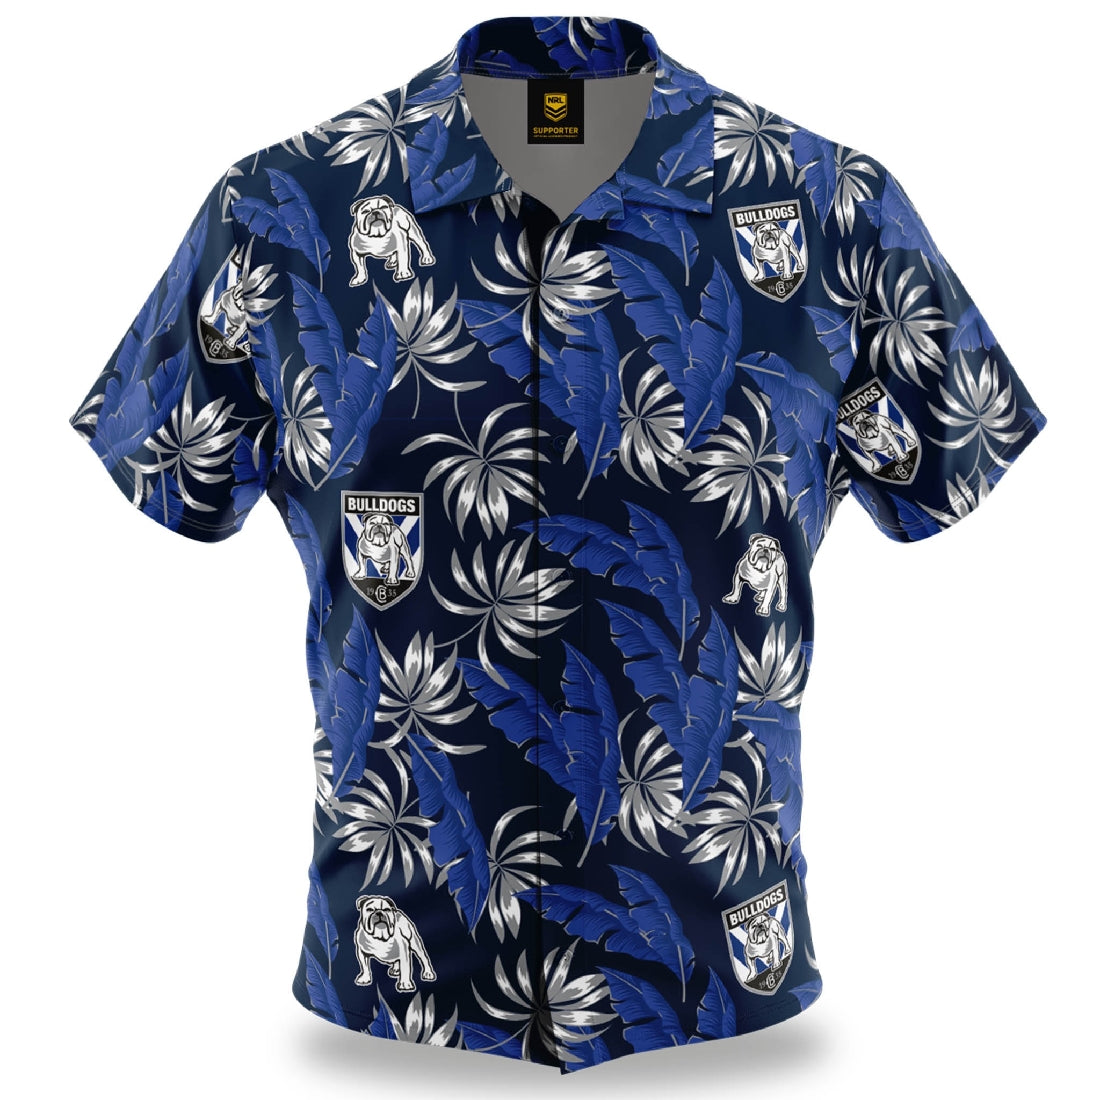 Canterbury Bulldogs Hawaiian Shirt